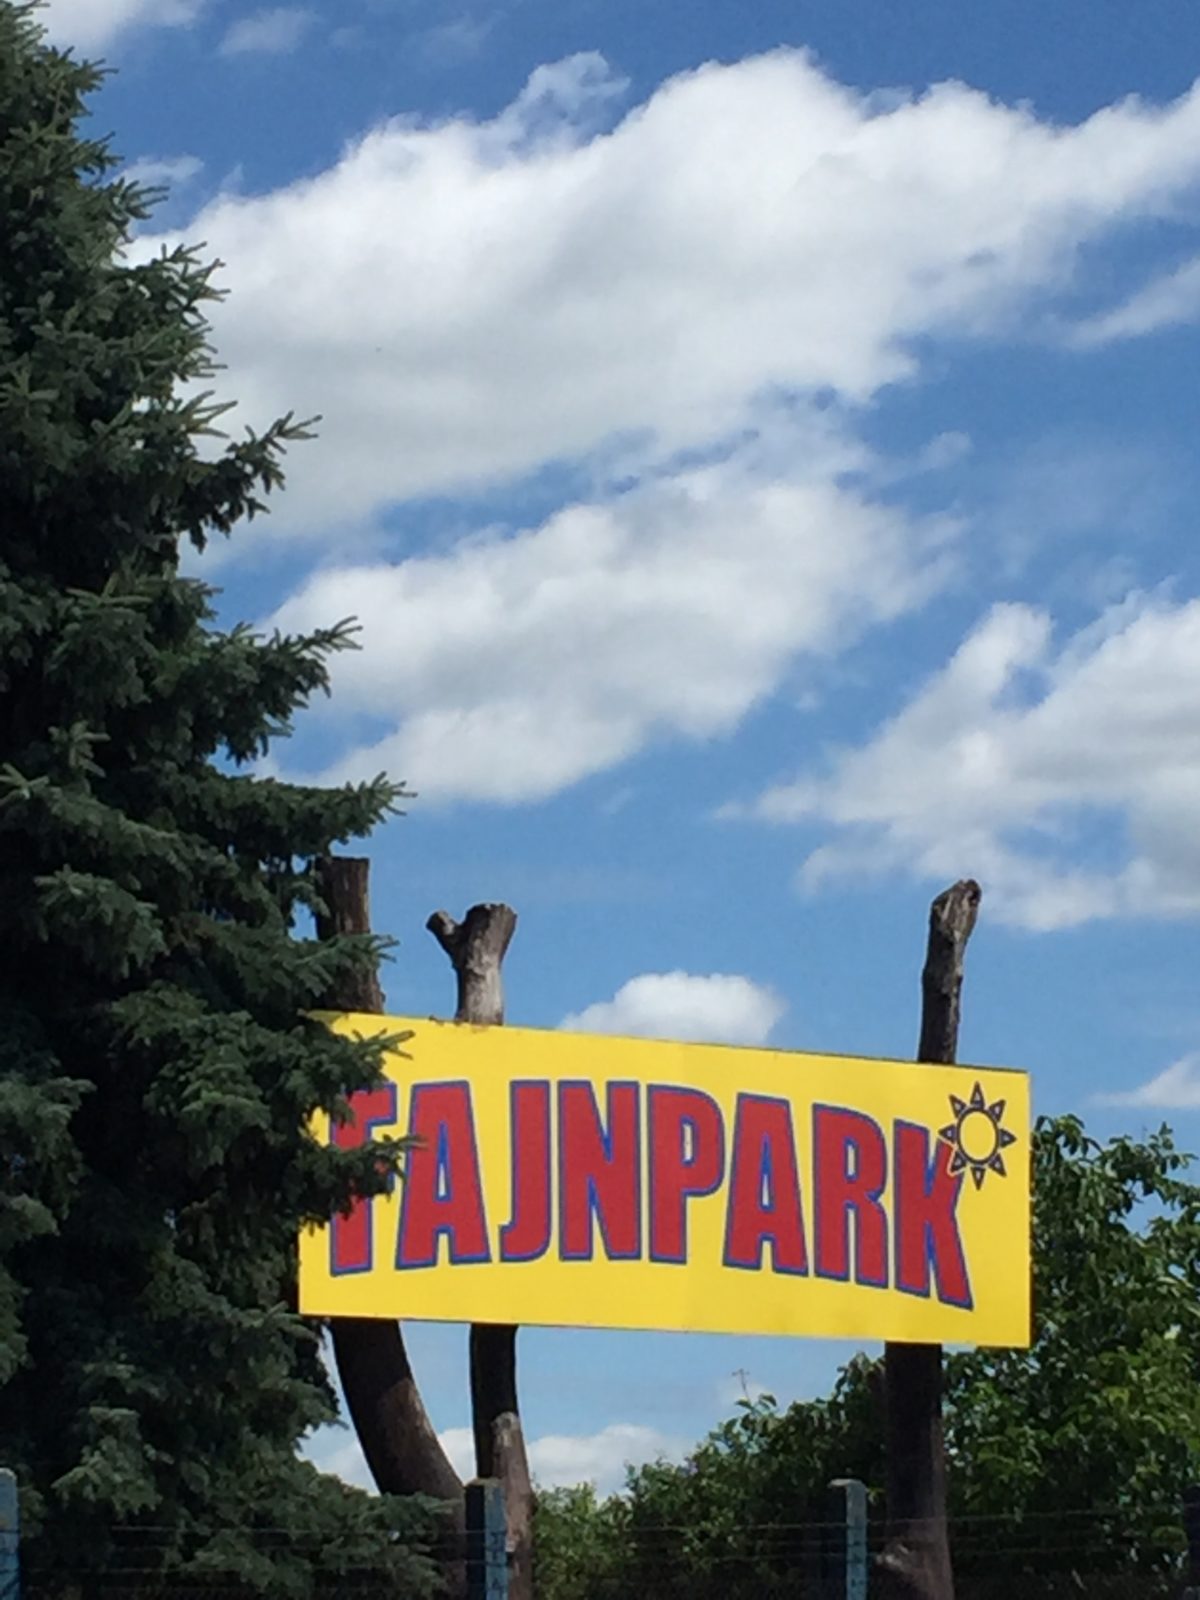 All day fun: Fajnpark